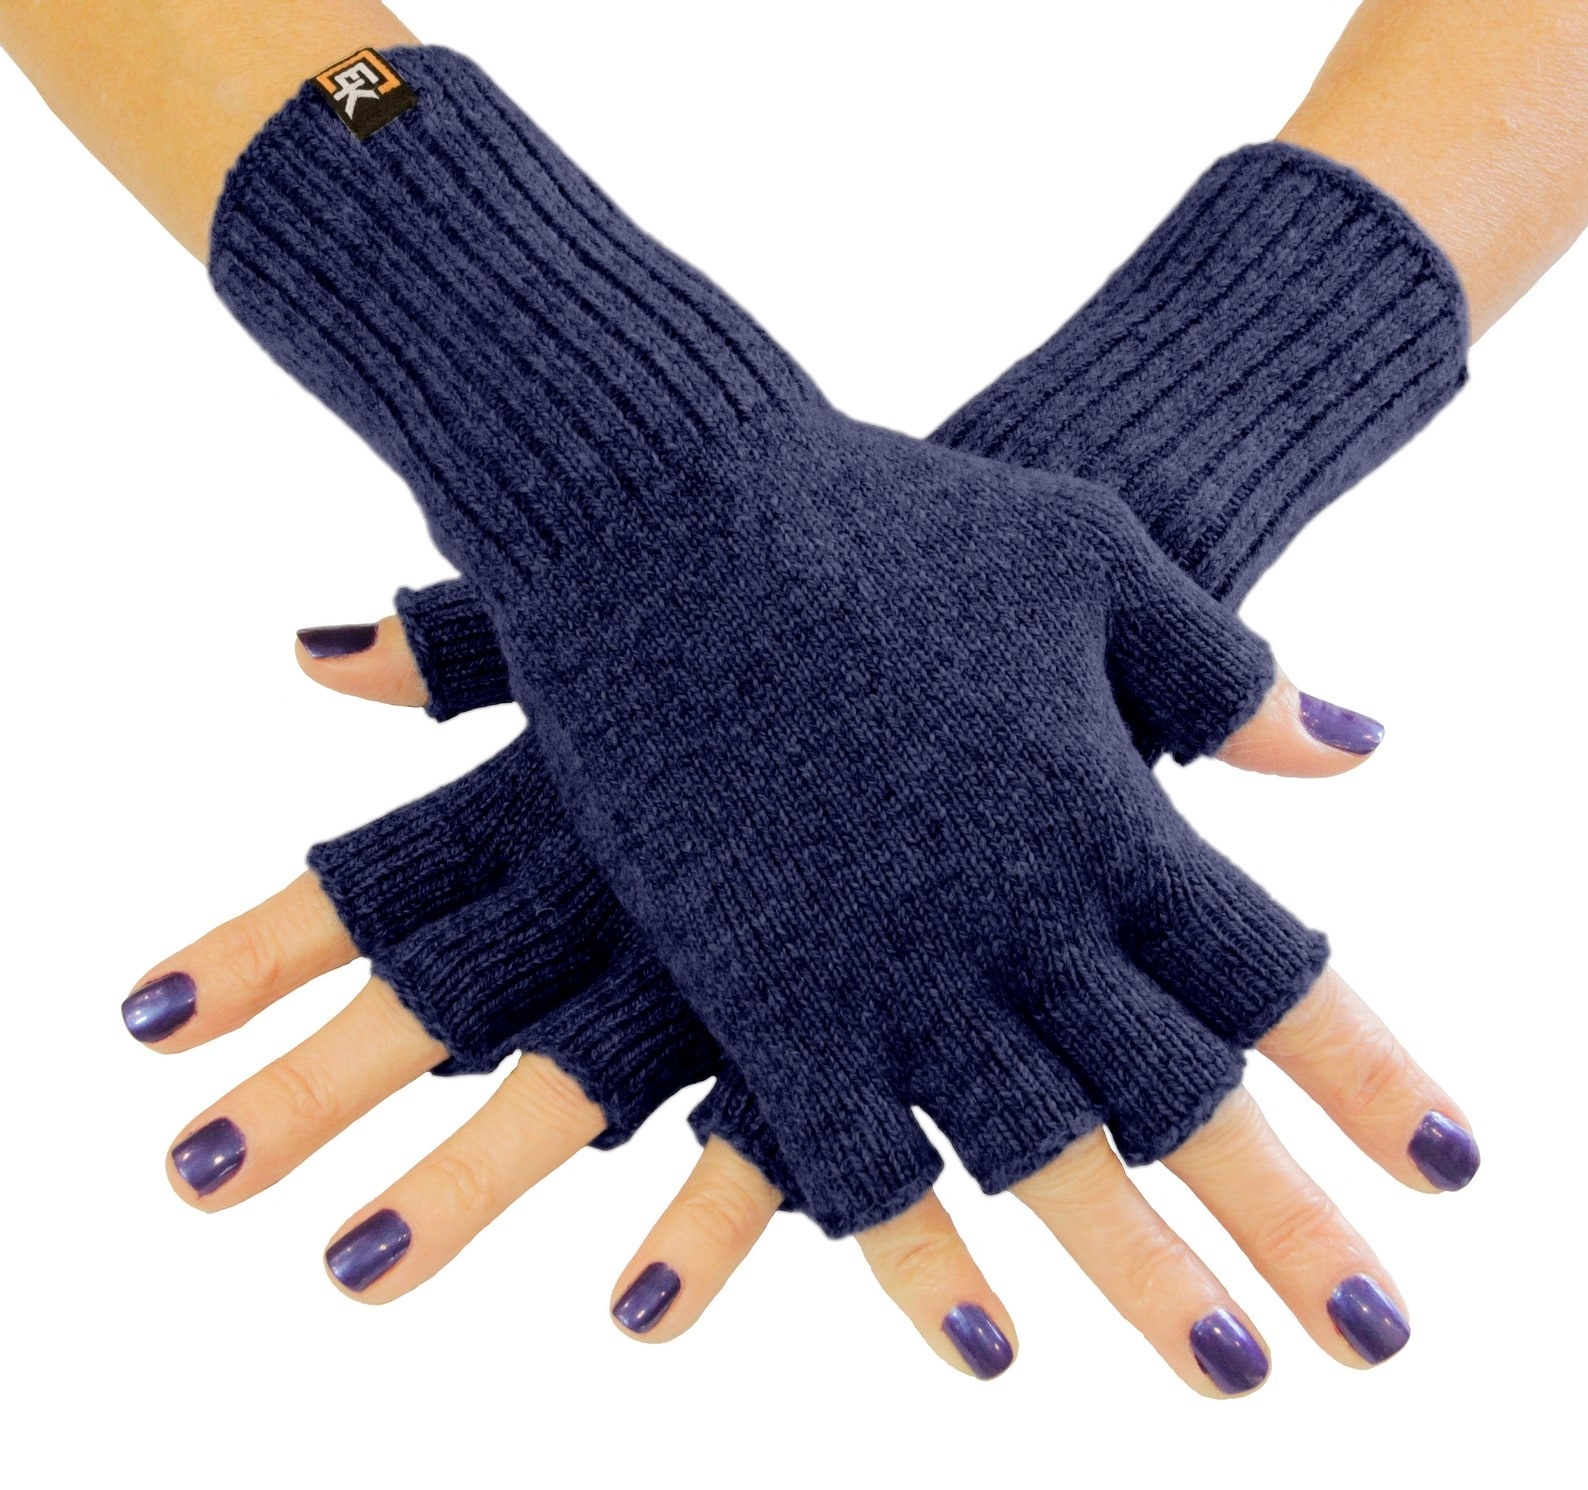 The fingerless gloves in blue